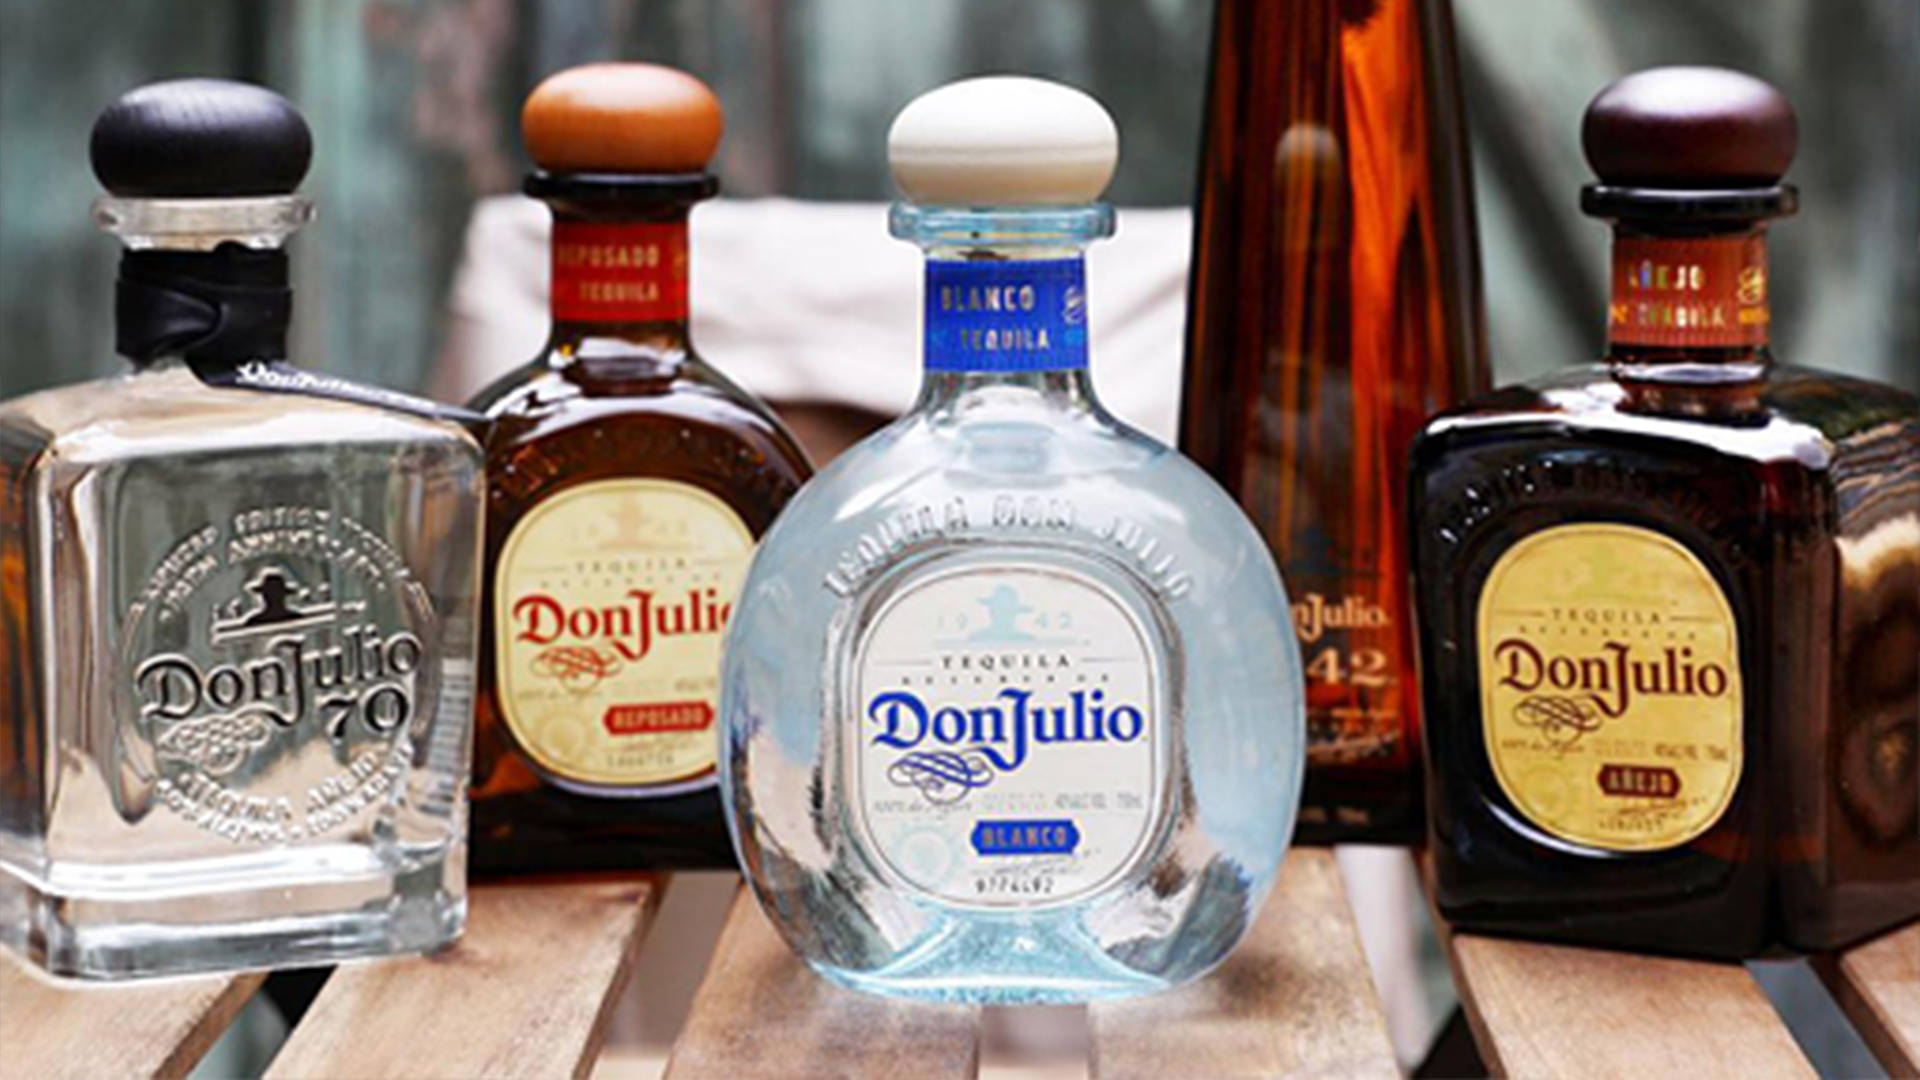 Vastacollezione Di Don Julio Tequila In Mostra. Sfondo